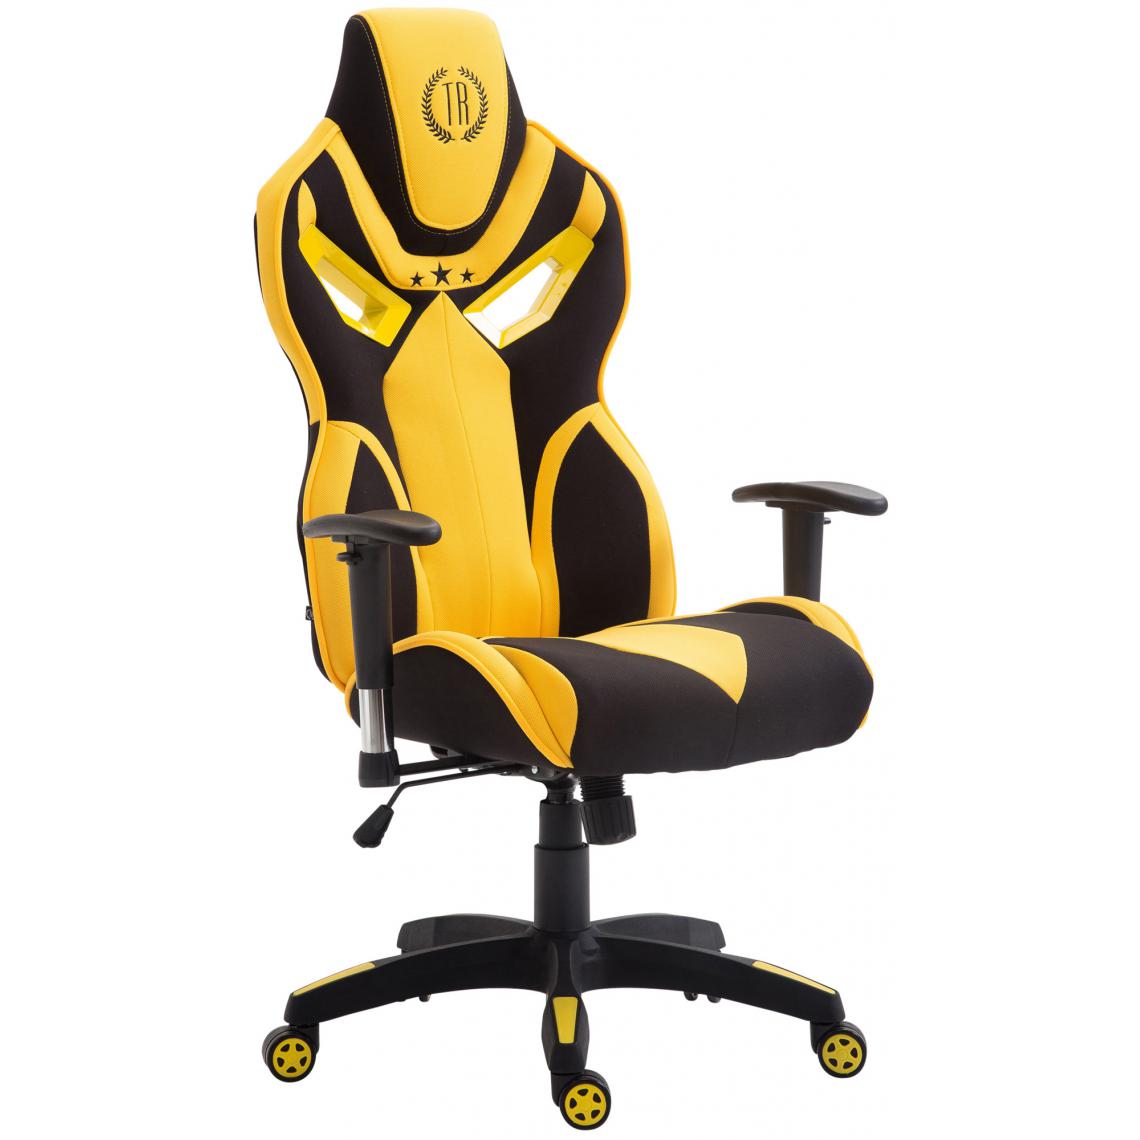 Icaverne - Magnifique Chaise de bureau gamme Luanda Fangio tissu couleur noir jaune - Chaises